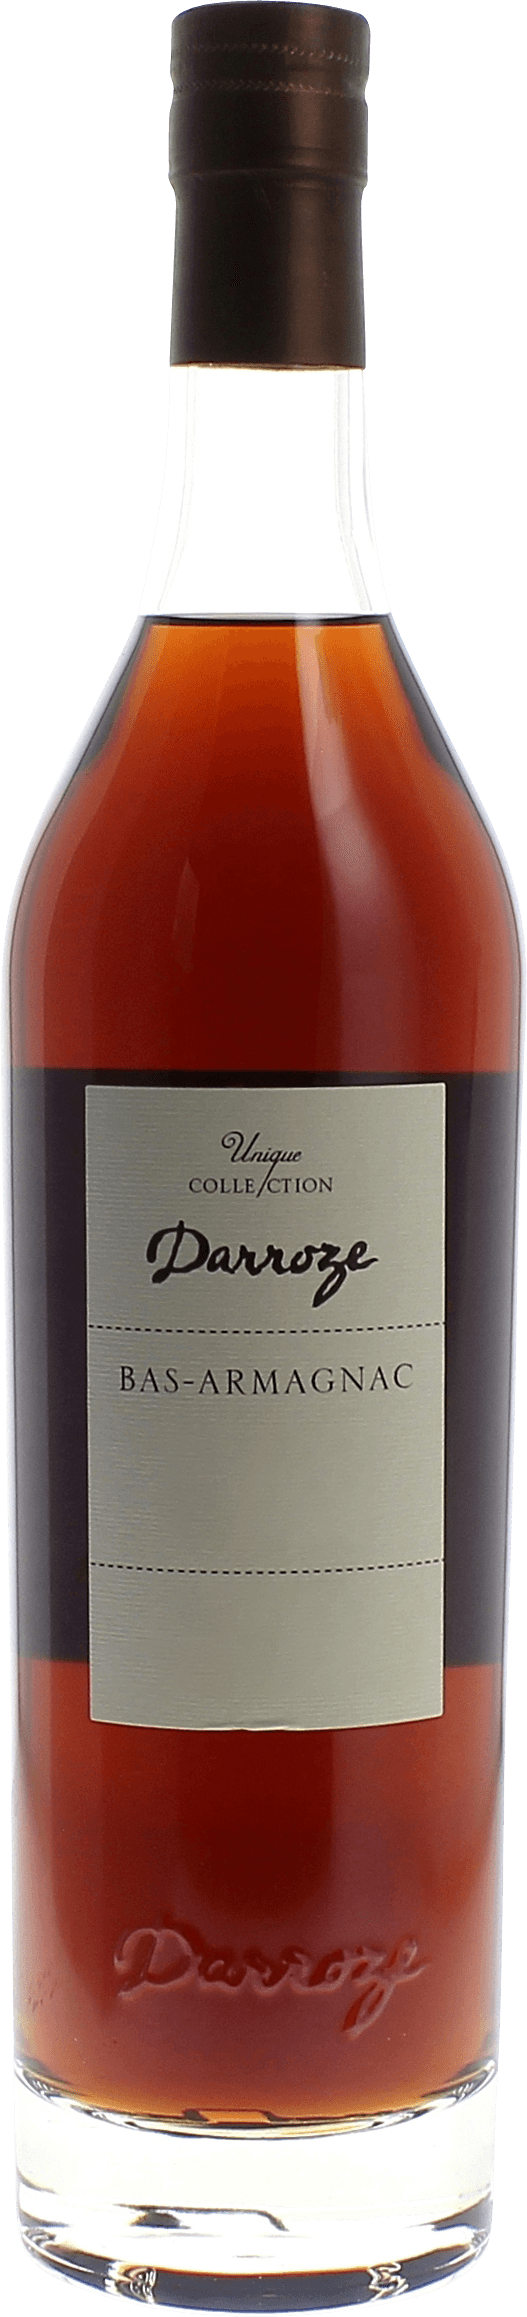 Domaine de lamarquette 48 1991  Bas Armagnac, DARROZE  Francis Bas Armagnac